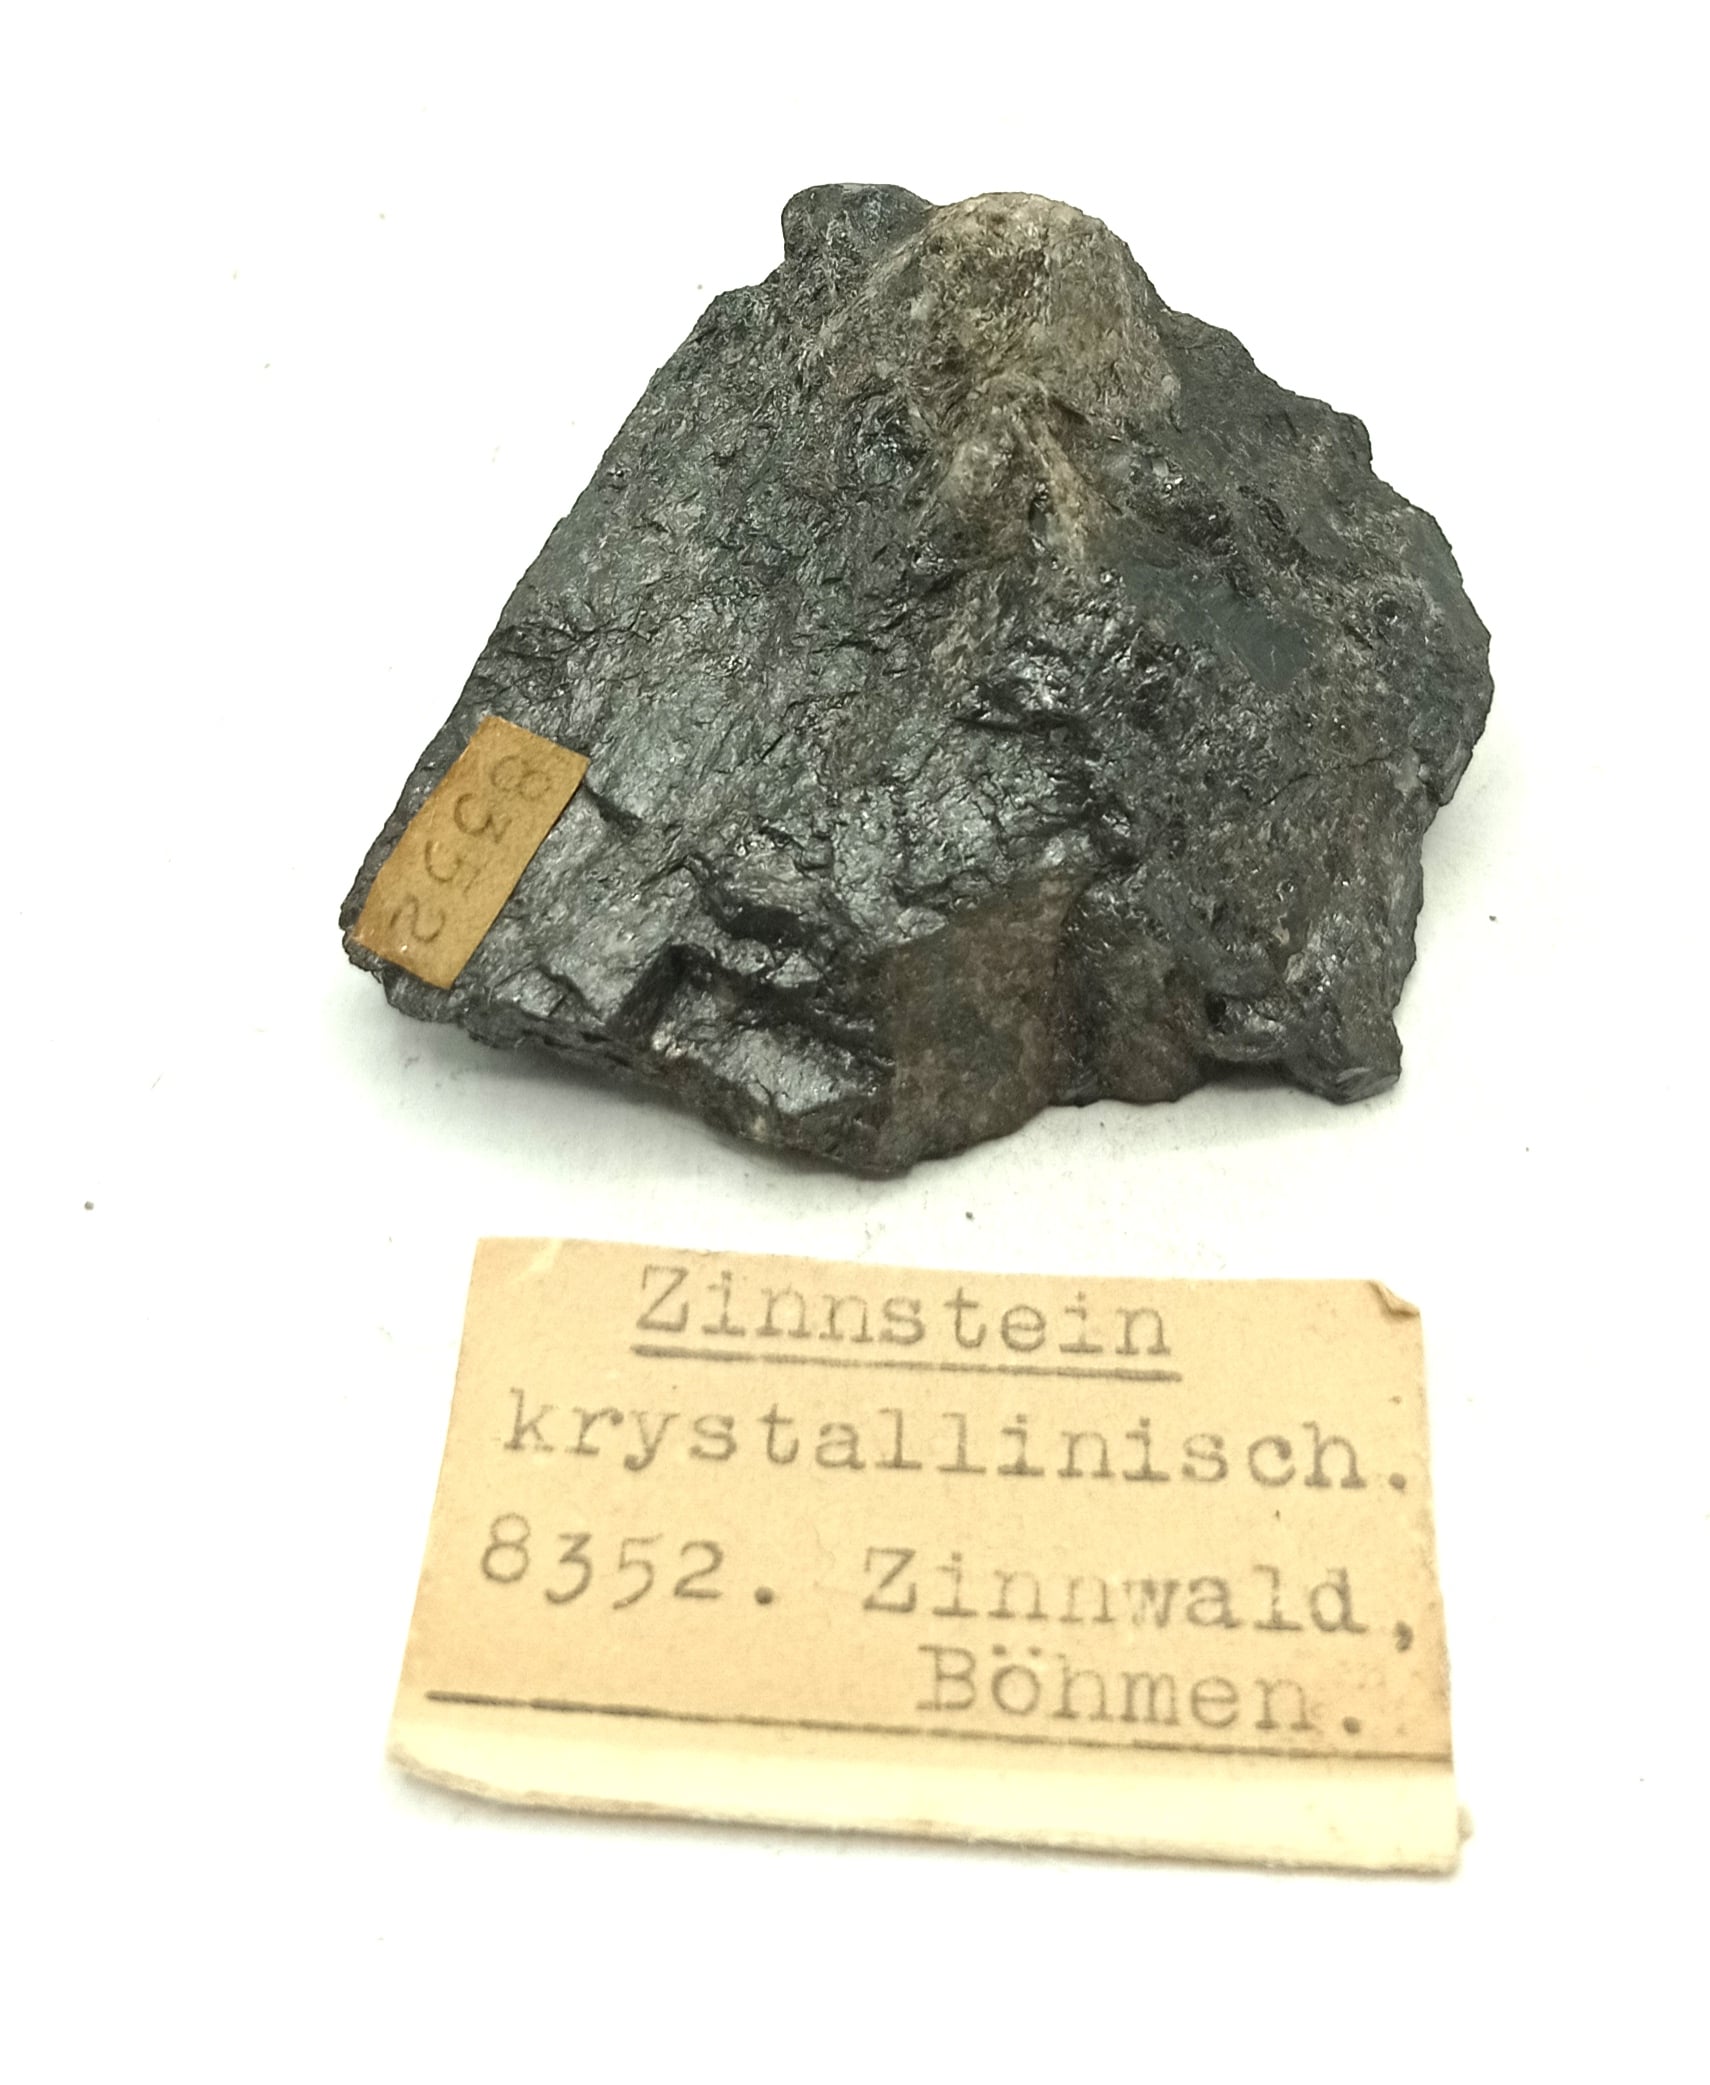 Zinnstein krystallinisch (Cassitérite), Zinnwald, Böhmen, Allemagne.